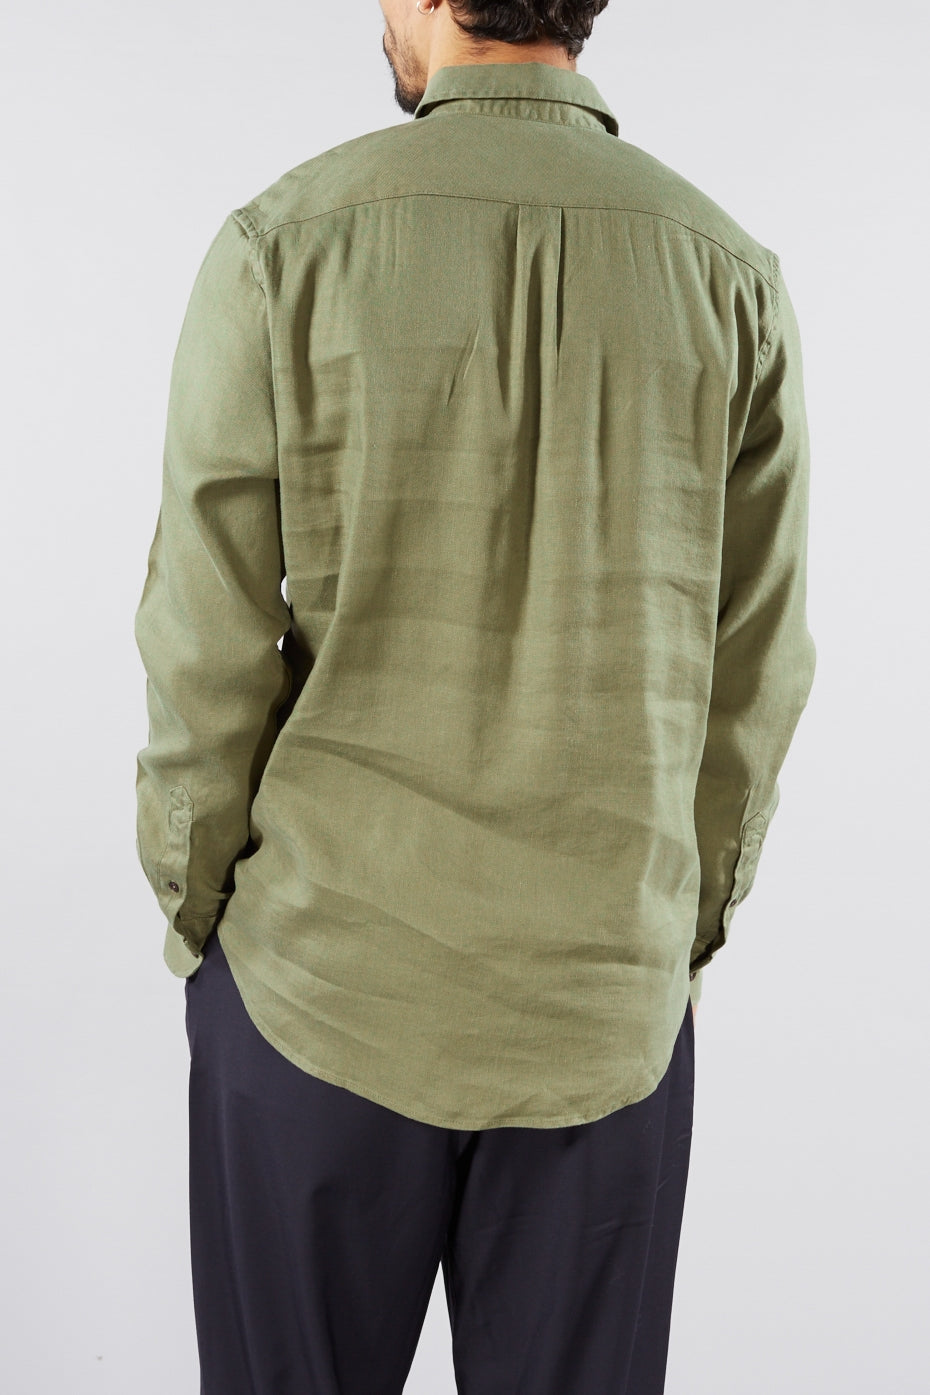 Lichen Green Liam Shirt